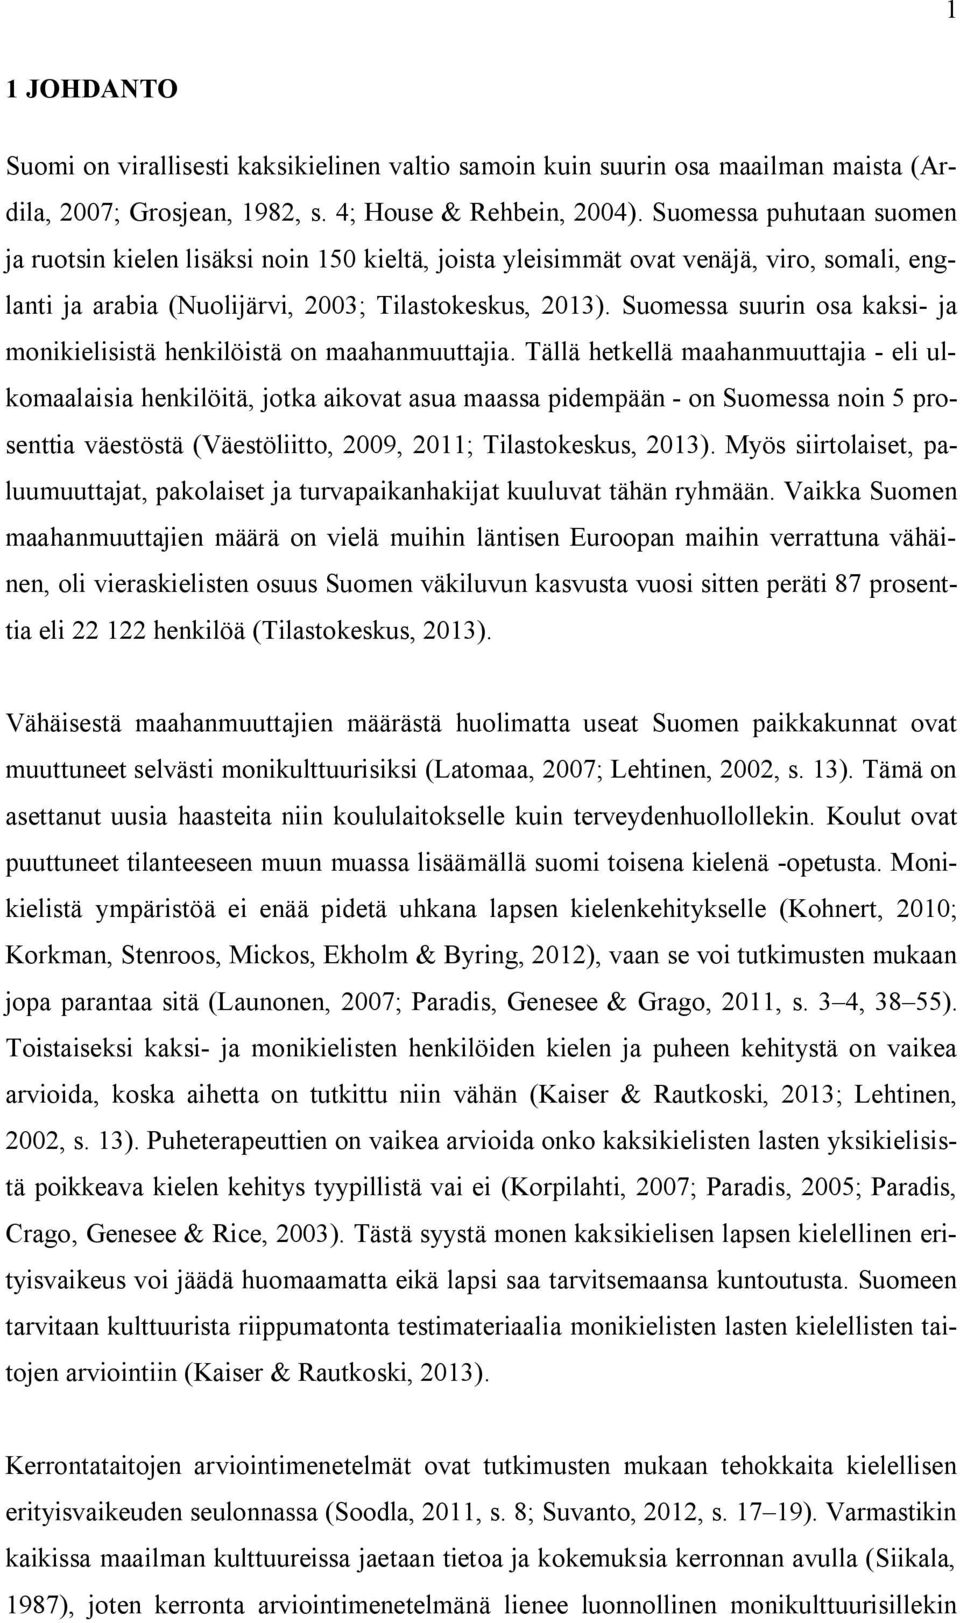 Suomessa suurin osa kaksi- ja monikielisistä henkilöistä on maahanmuuttajia.